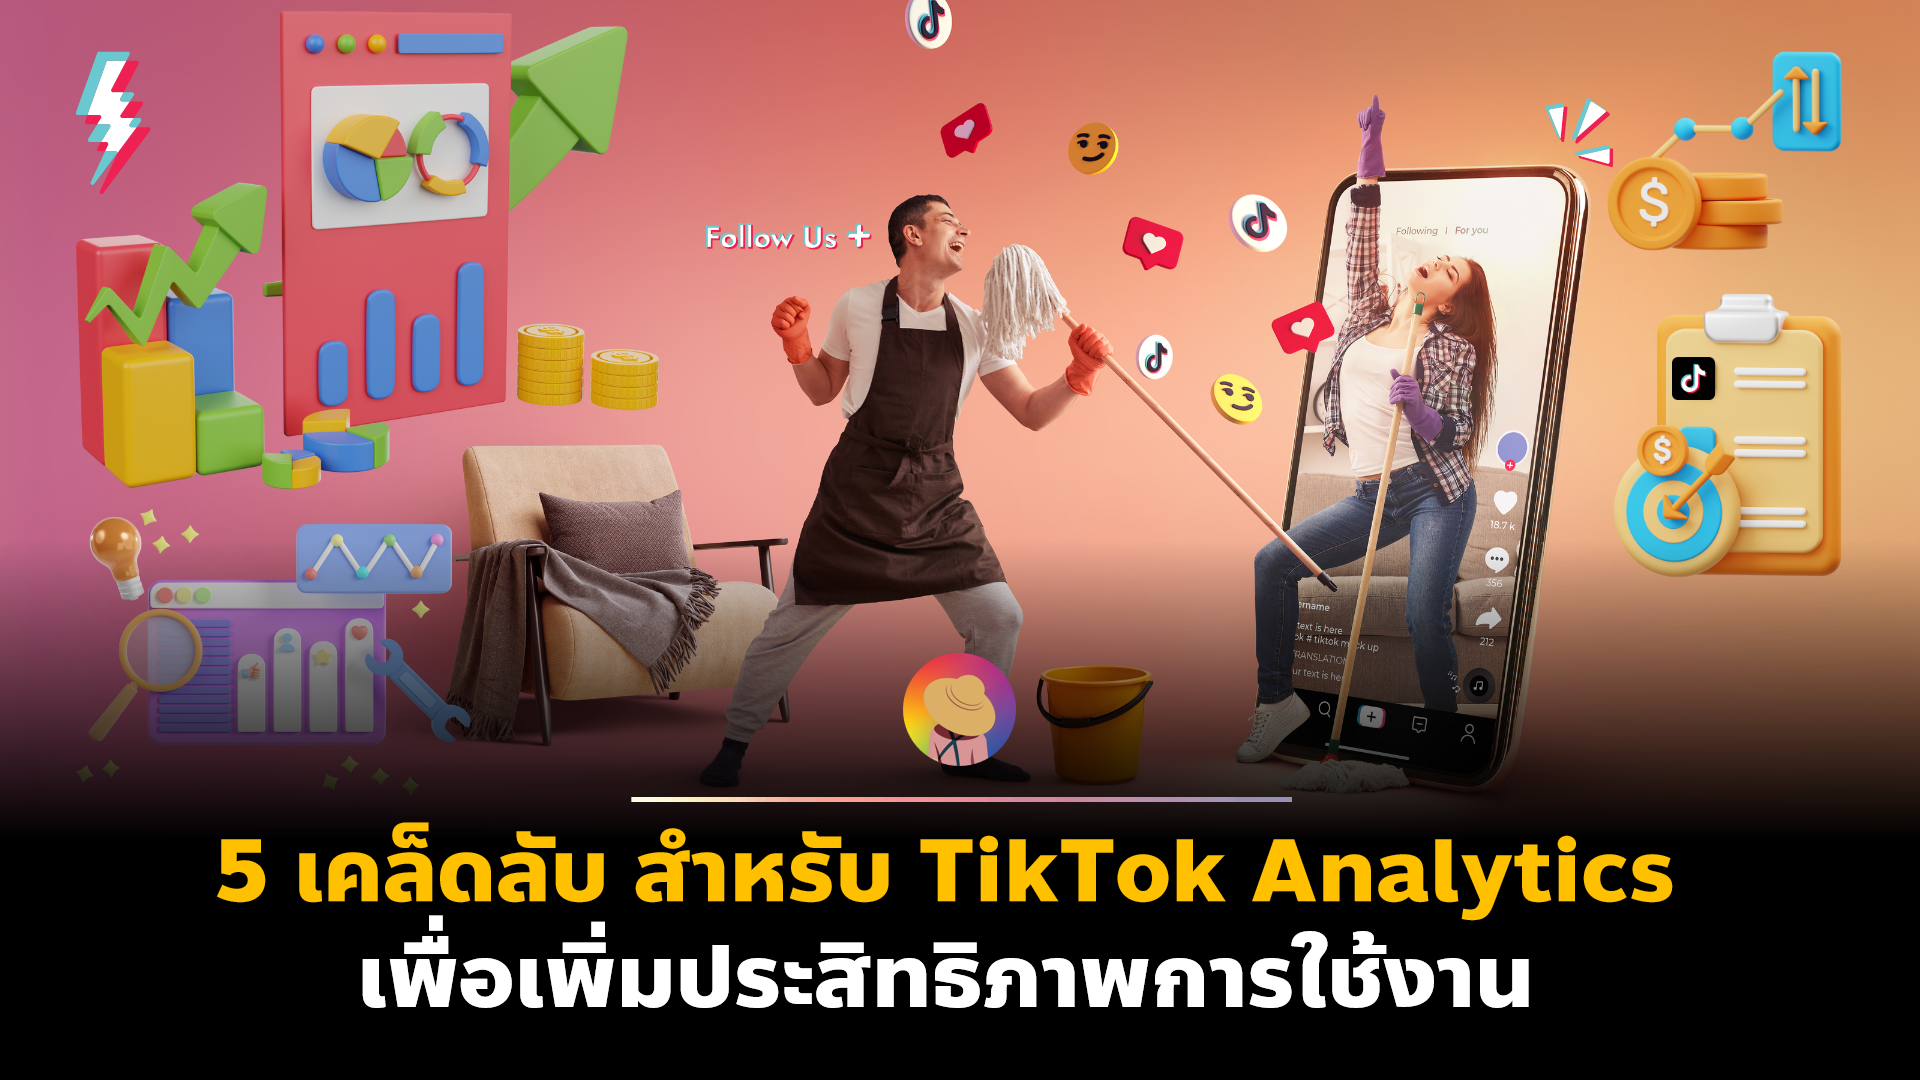 5 เคล็ดลับ สำหรับ TikTok Analytics เพื่อเพิ่มประสิทธิภาพการใช้งาน